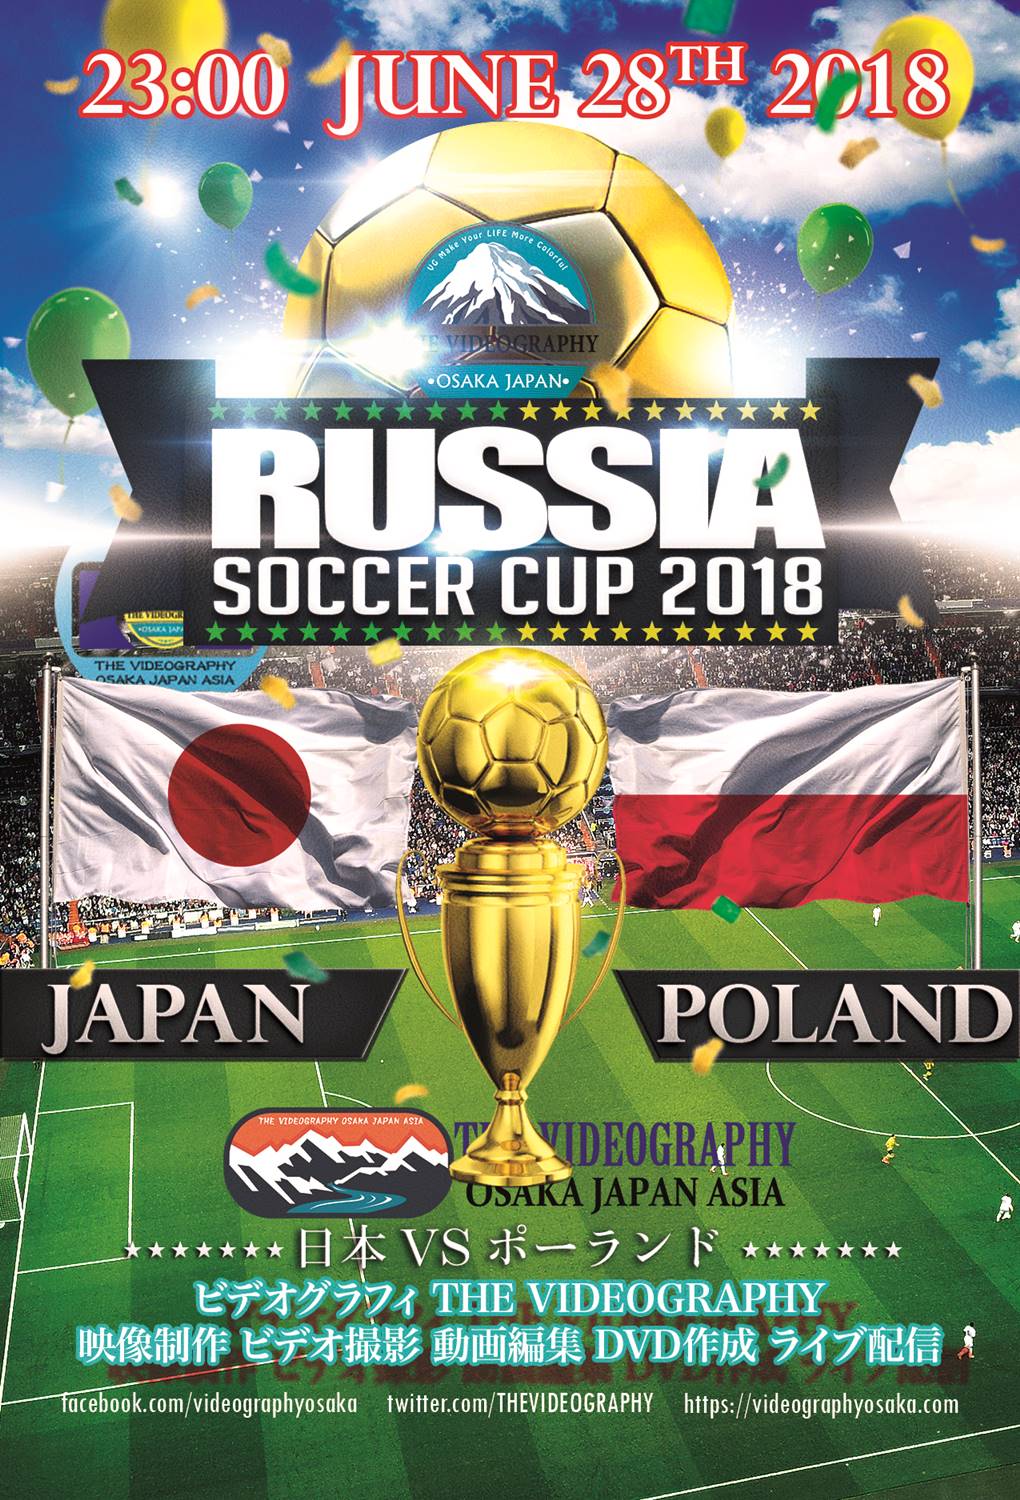 ワールドカップ 2018・サッカー DVDジャケット レーベル パッケージデザイン